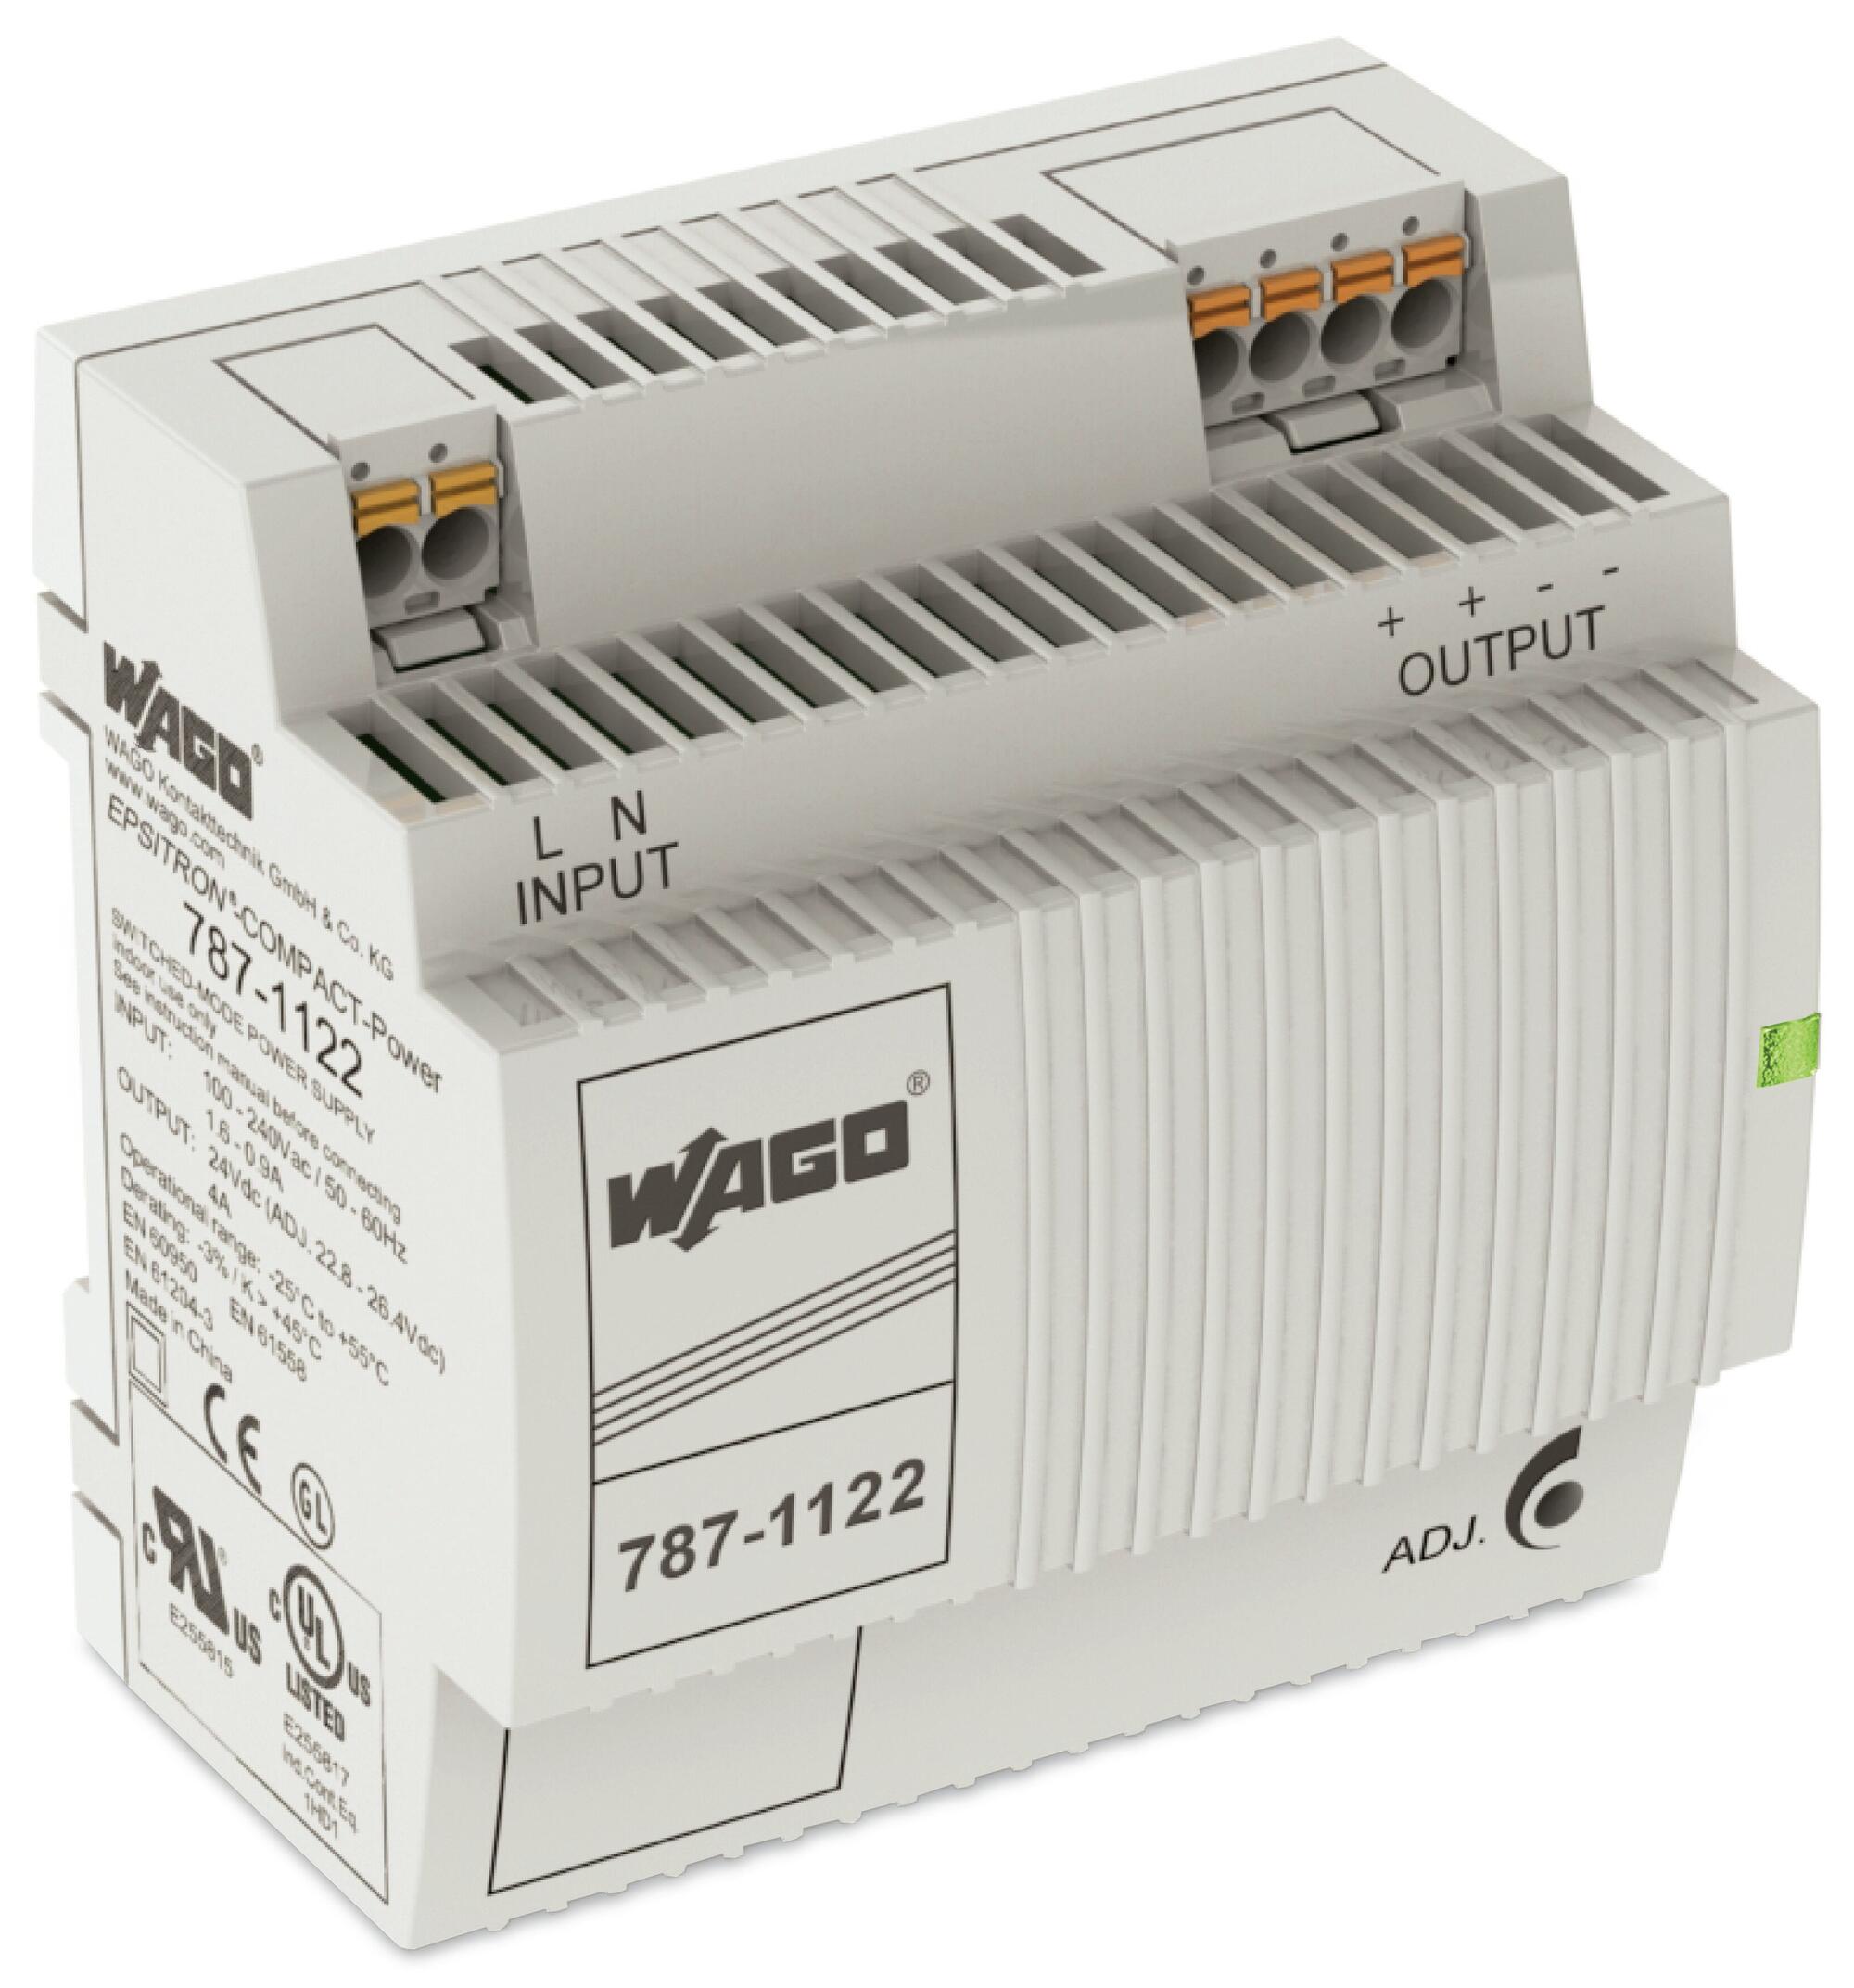 Switched mode-strømforsyning; Kompakt; 1-faset; 24 V DC udgangsspænding; 4 A udgangsstrøm; DC-OK LED